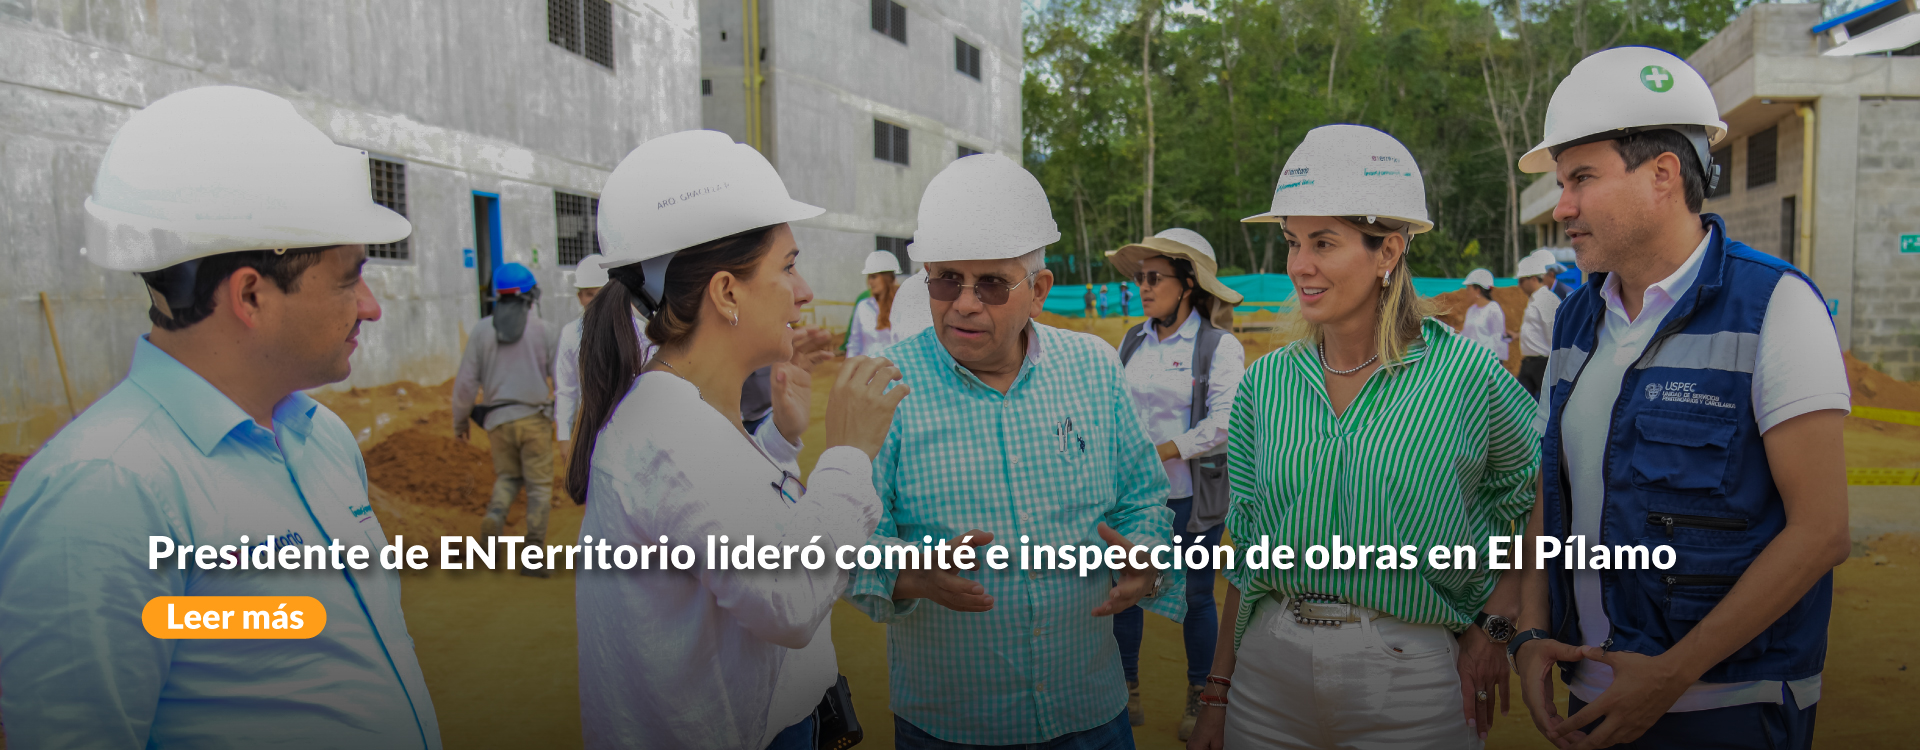 Presidente de ENTerritorio lideró comité e inspección de obras en El Pílamo